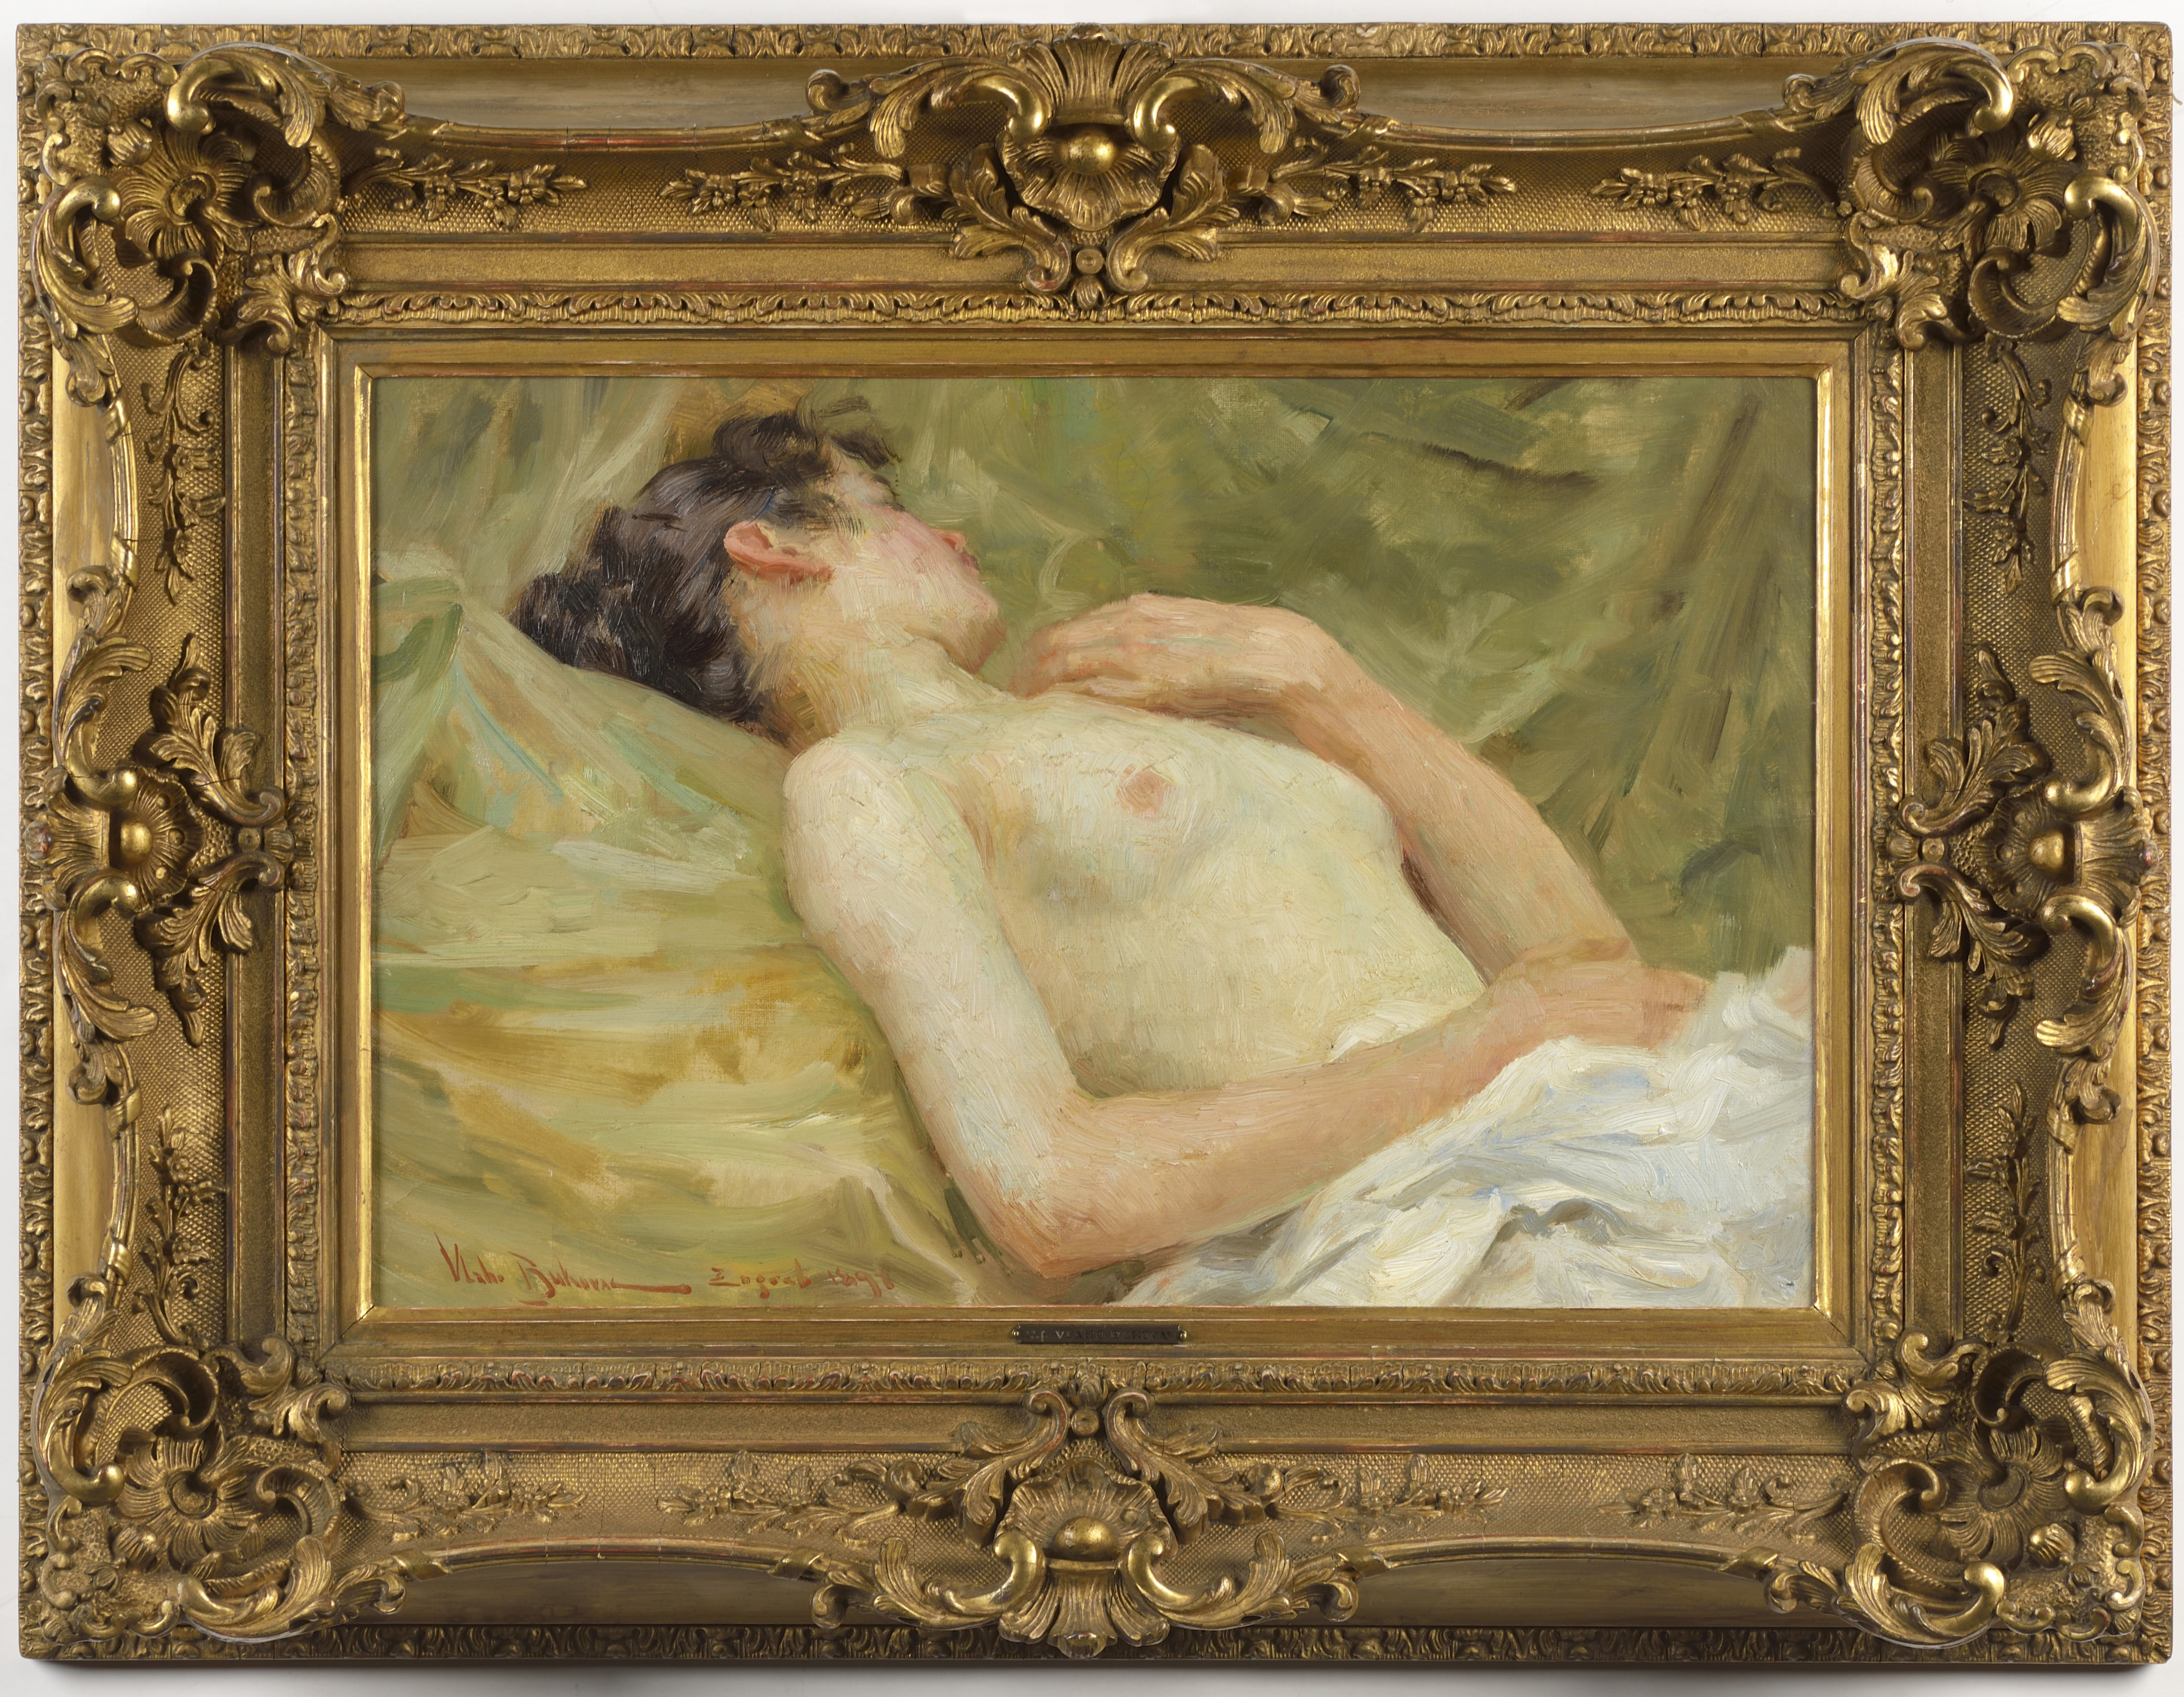 Vlaho Bukovac: Ležící ženský akt olej na plátně / 31 x 45 cm Cena: 930 000 Kč / Arthouse Hejtmánek 22. 5. 2014